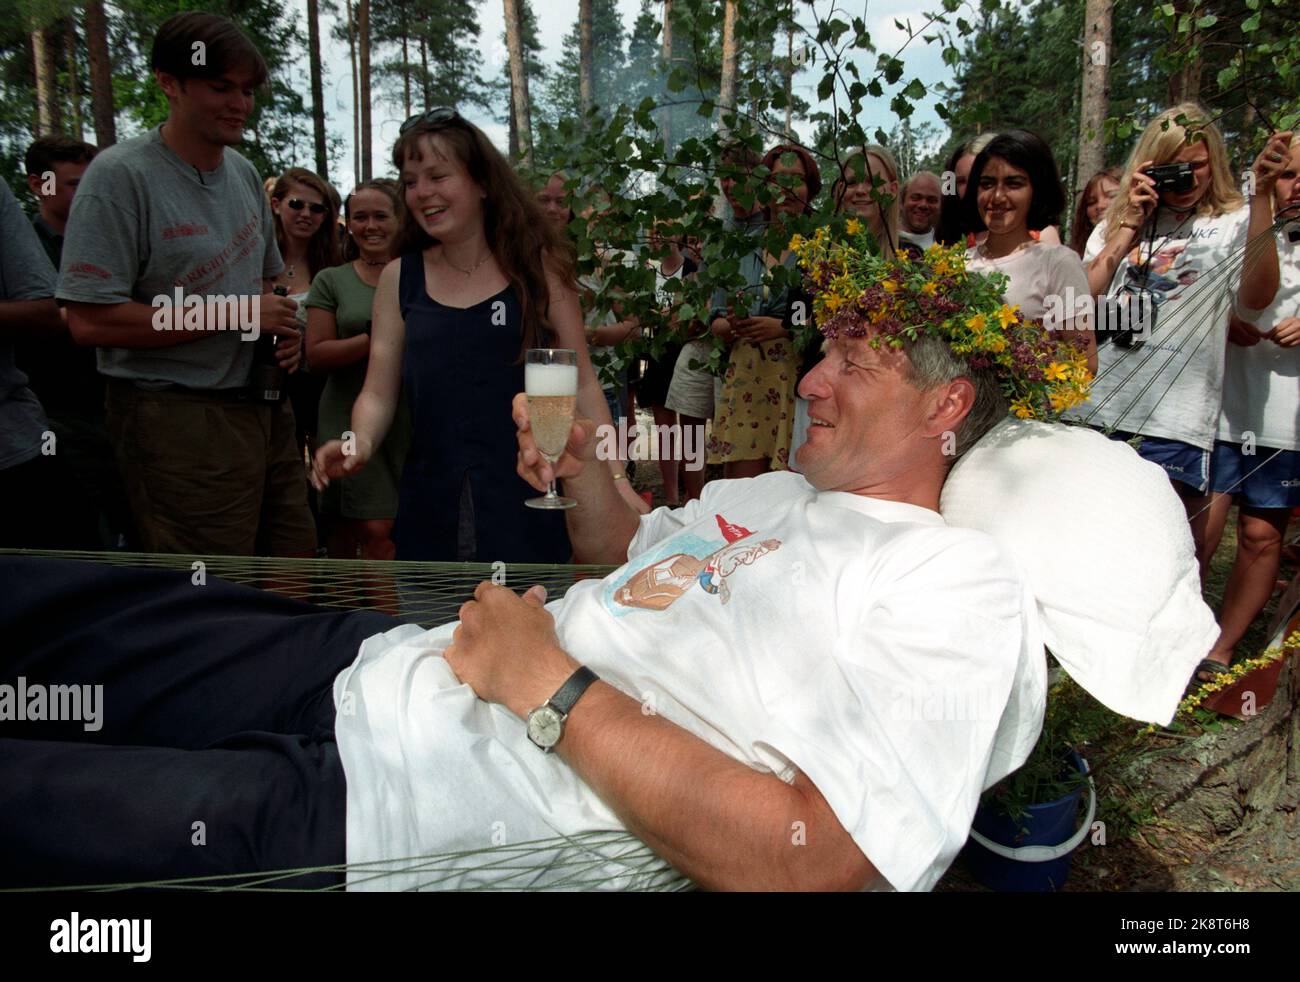 Utøya 19960720. Il leader del Partito del lavoro Thorbjørn Jagland beve champagne con corona di fiori sulla testa nell'amaca del campo DI Utøya a Tyrifjorden. Foto: Helge Hansen / NTB / NTB Foto Stock